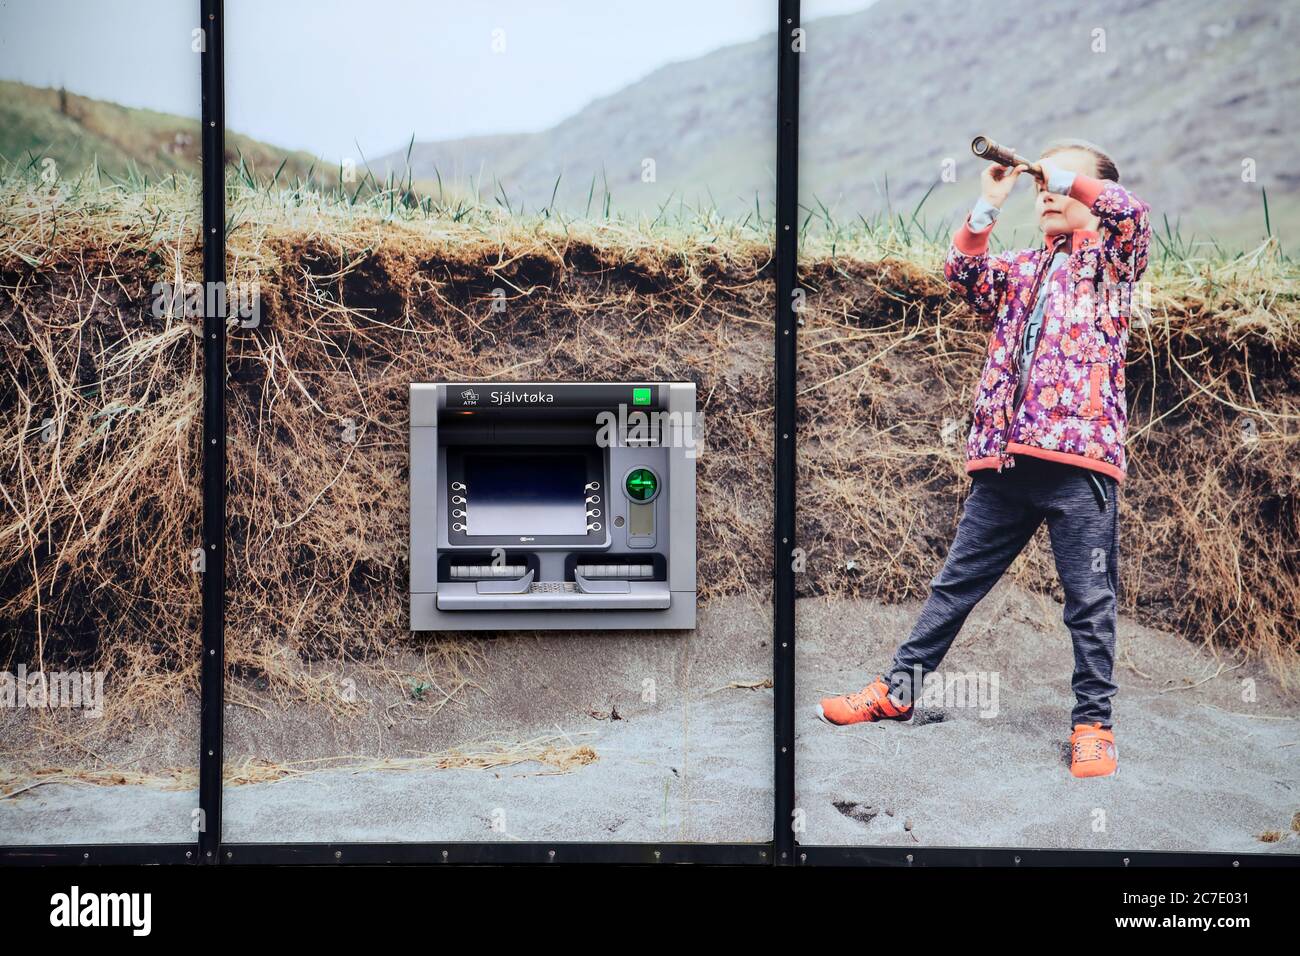 Geldautomat auf dem Bankgebäude mit einem riesigen Foto eines jungen Mädchens, das Teleskop in der Wildnis benutzt. Miðvágur.Vagar.Färöer-Inseln.Territorium von Dänemark Stockfoto